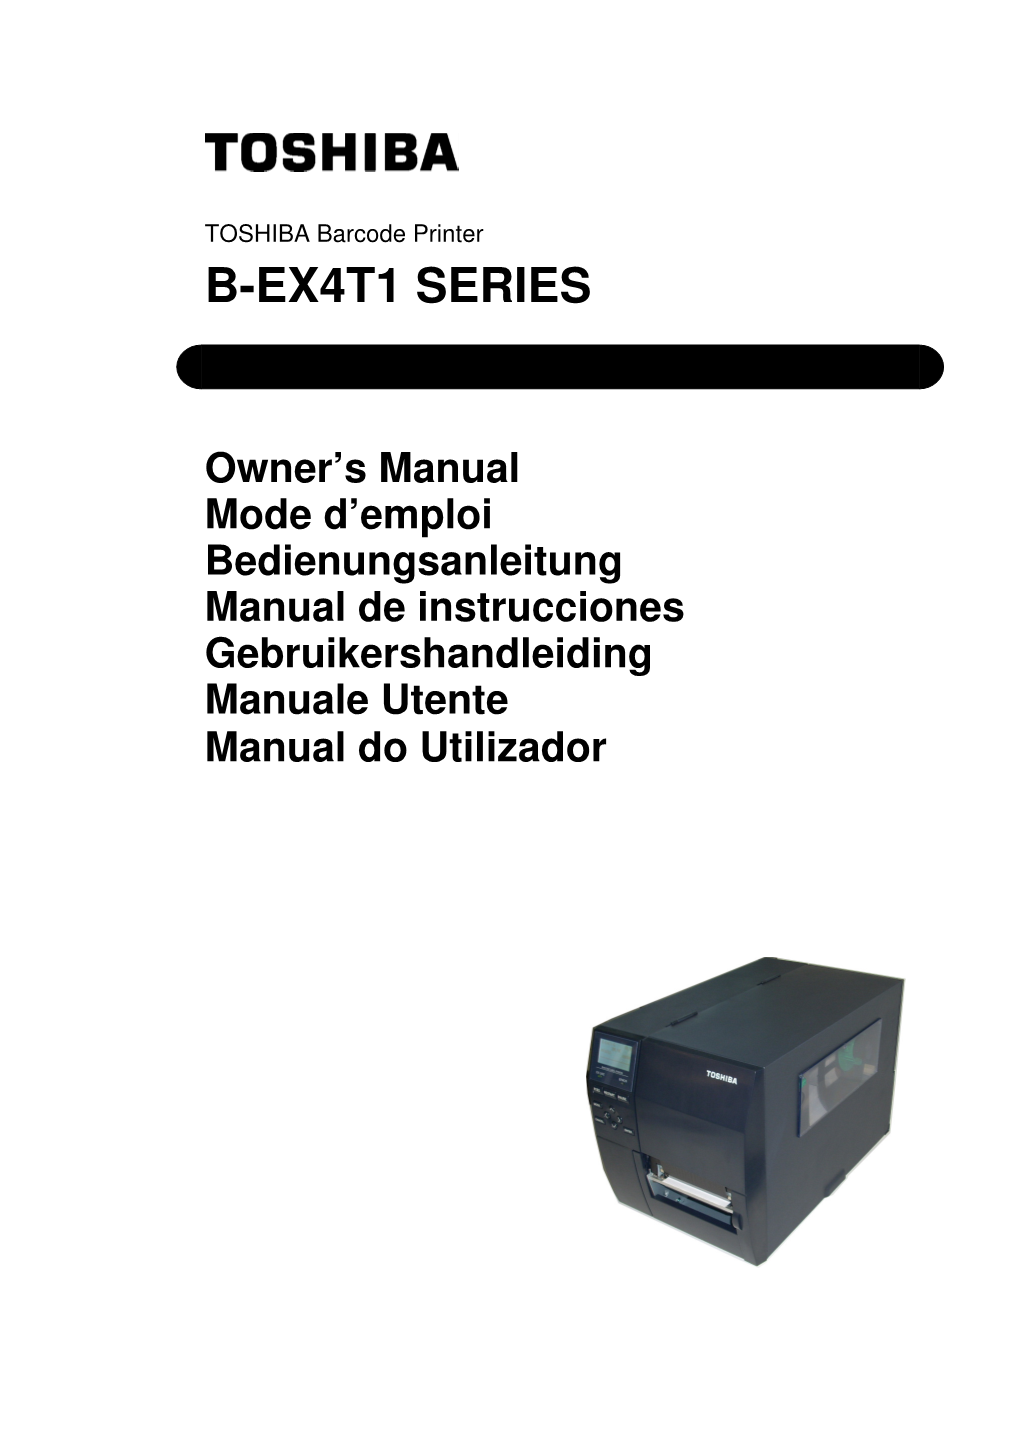 B-Ex4t1 Series